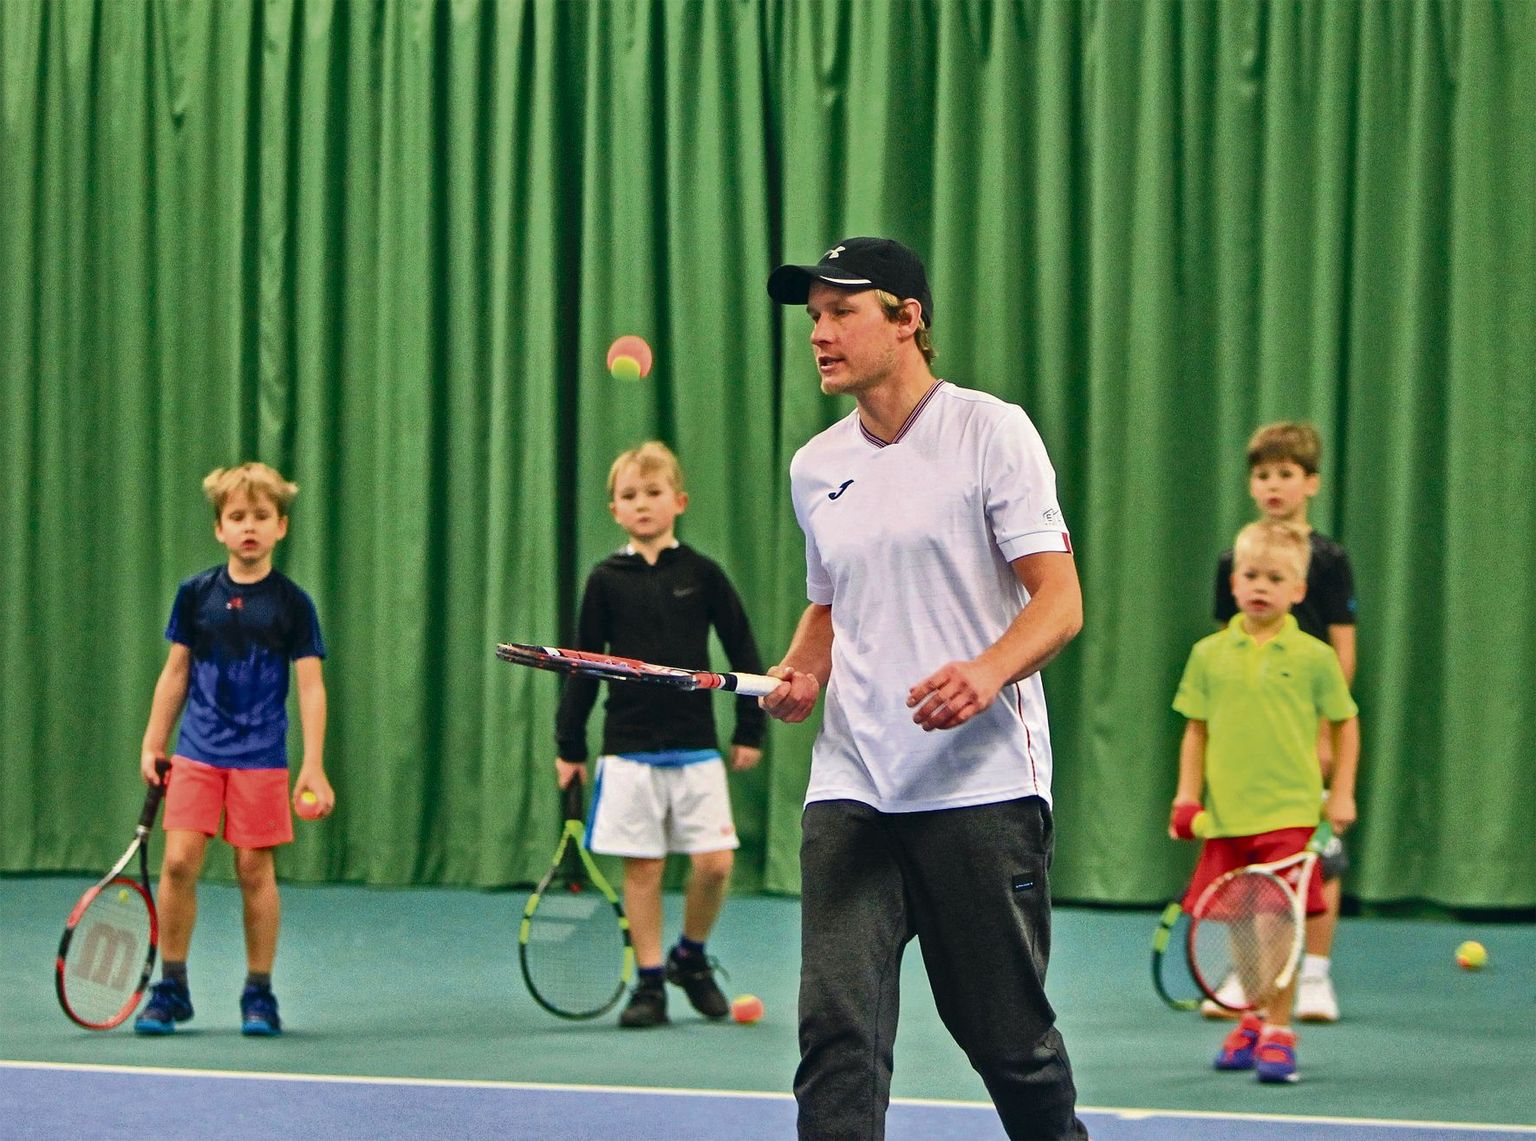 MK tennisekooli treener ja eestvedaja Martin Karis sai nädalapäevad tagasi kahe suure tunnustuse osaliseks. Eesti tenniseliit kuulutas Karise aasta noorte-
treeneriks ja tema tennisekooli aasta tennisekooliks.